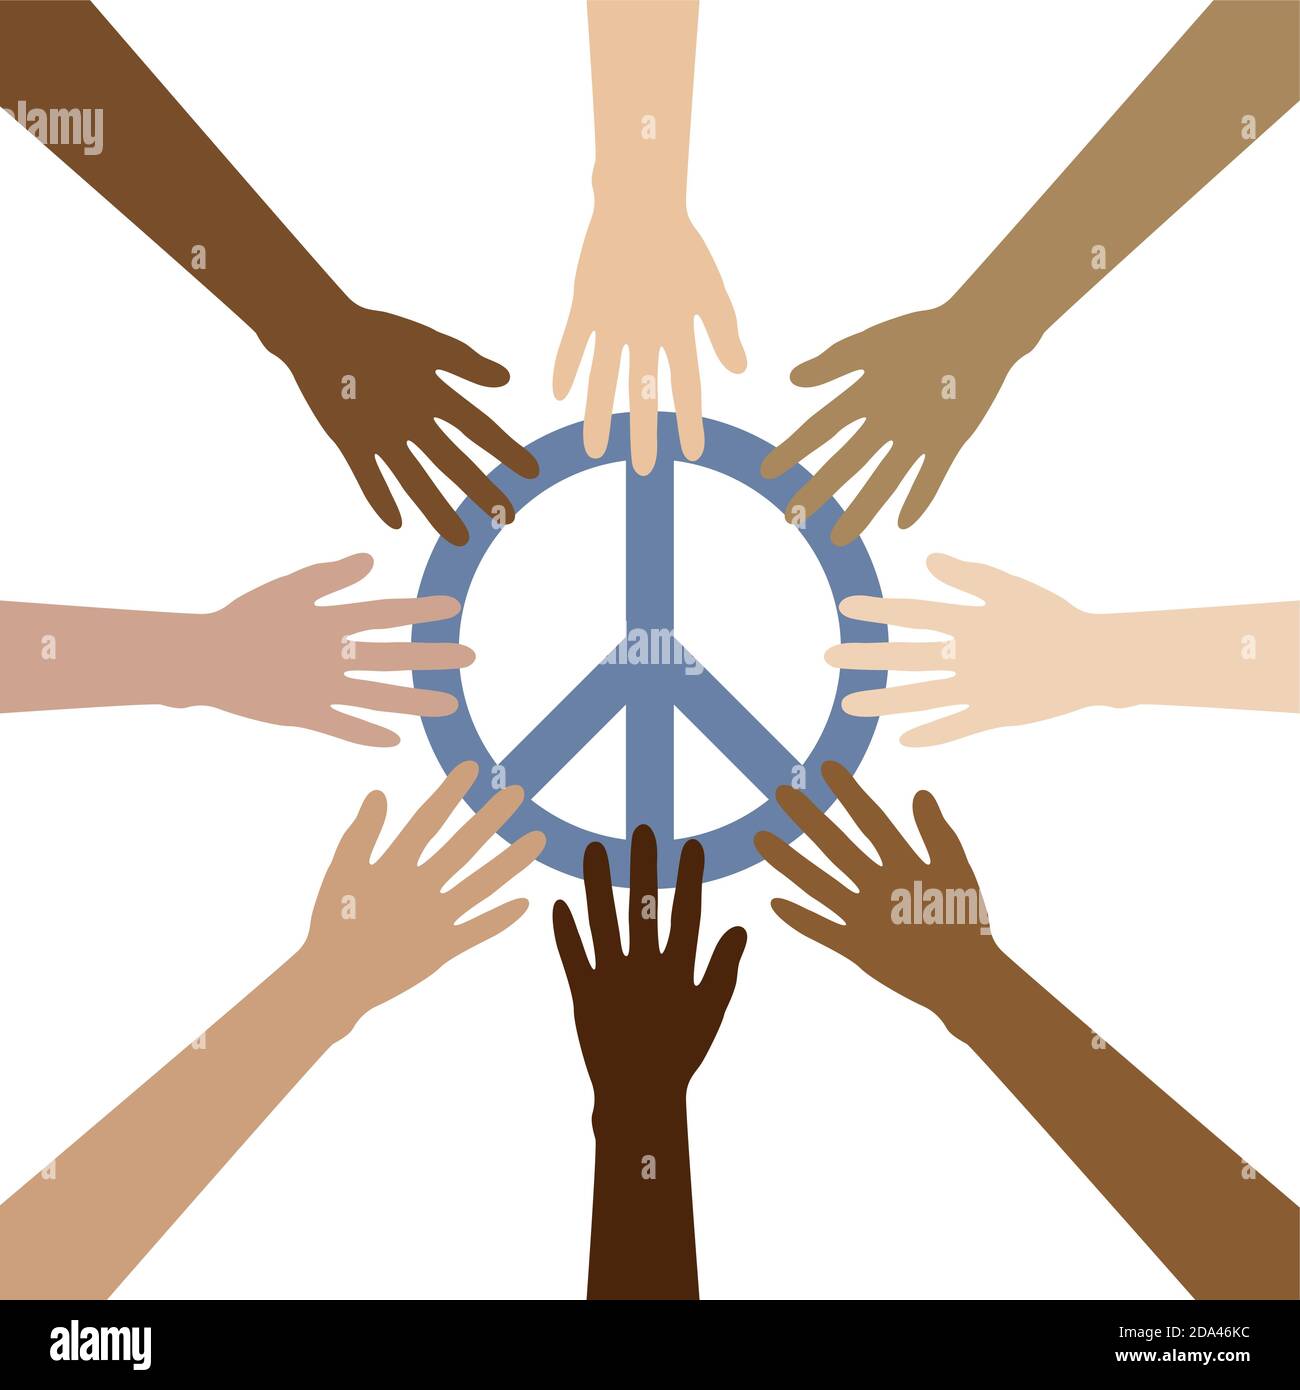 gruppo di mani umane con diversi colori della pelle costruire un Cerchio intorno al simbolo di pace, illustrazione vettoriale EPS10 Illustrazione Vettoriale